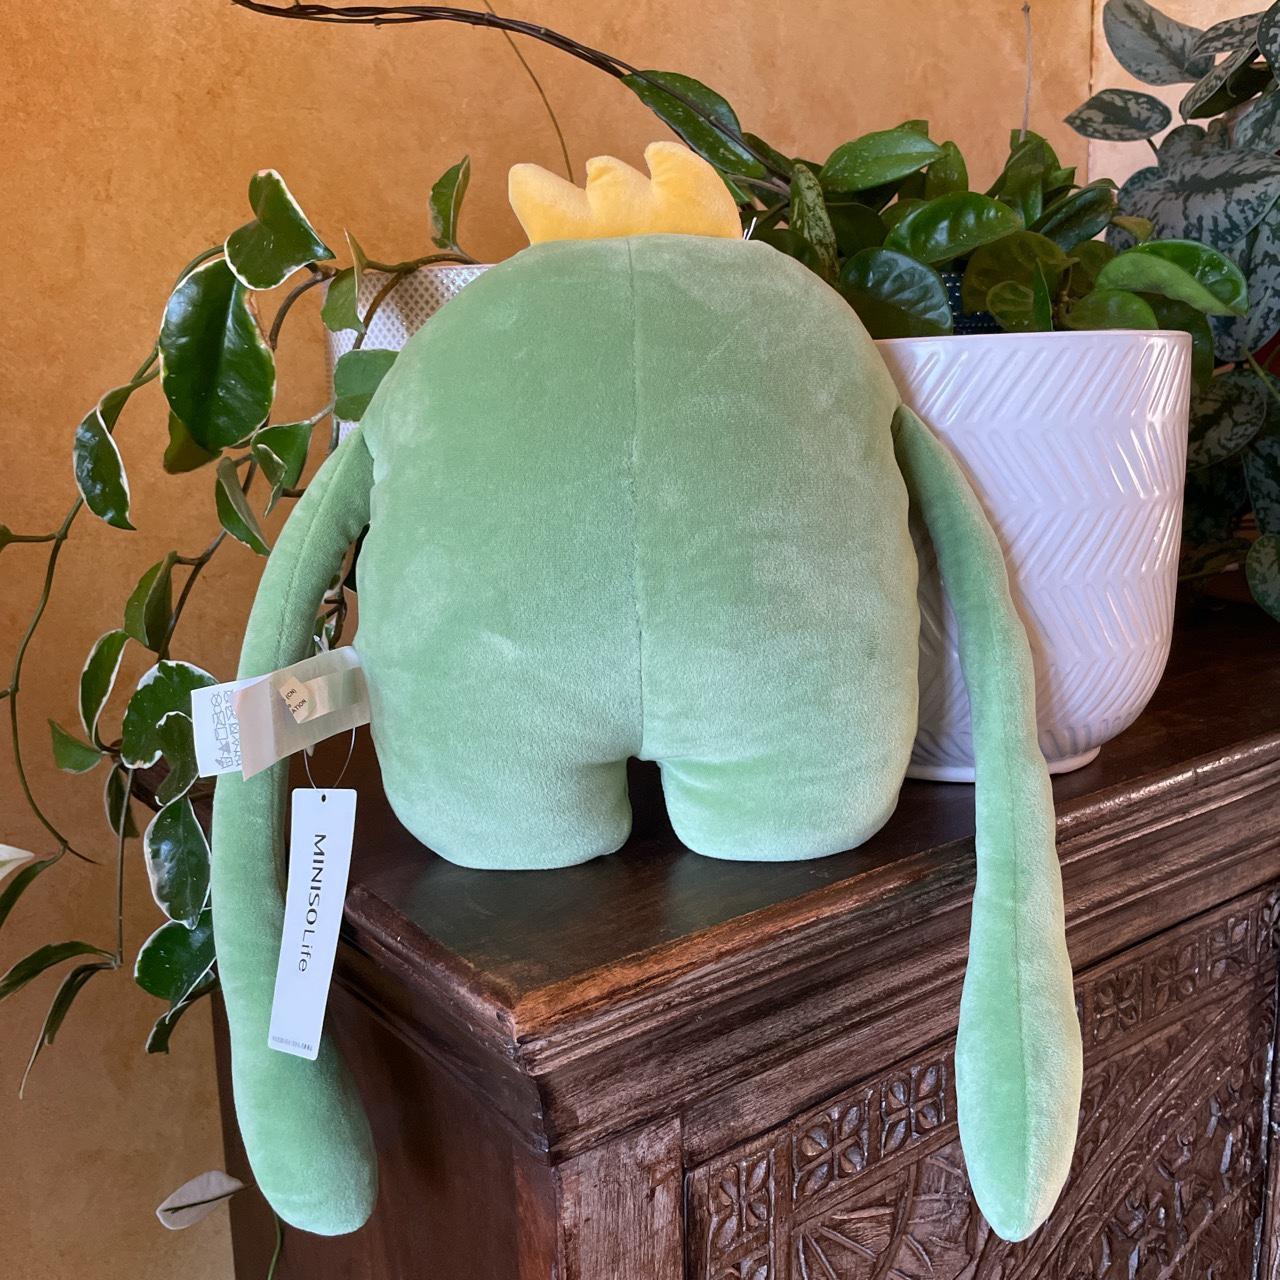 Miniso green monster stuffed animal: Brand new - Depop